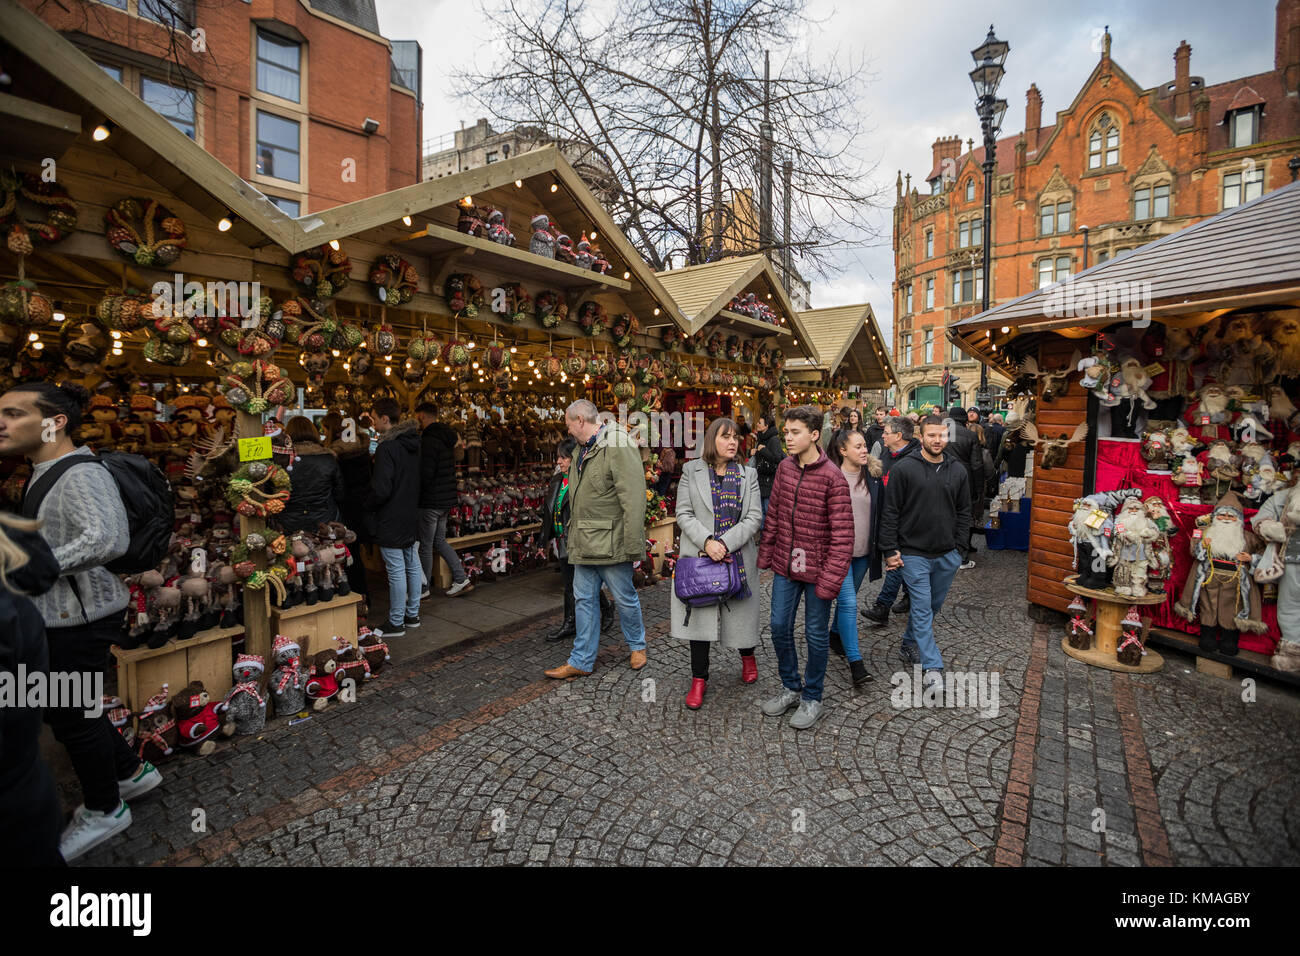 Los compradores y los juerguistas en Manchester los mercados de Navidad alrededor de la ciudad, Manchester, Inglaterra, Reino Unido. Foto de stock